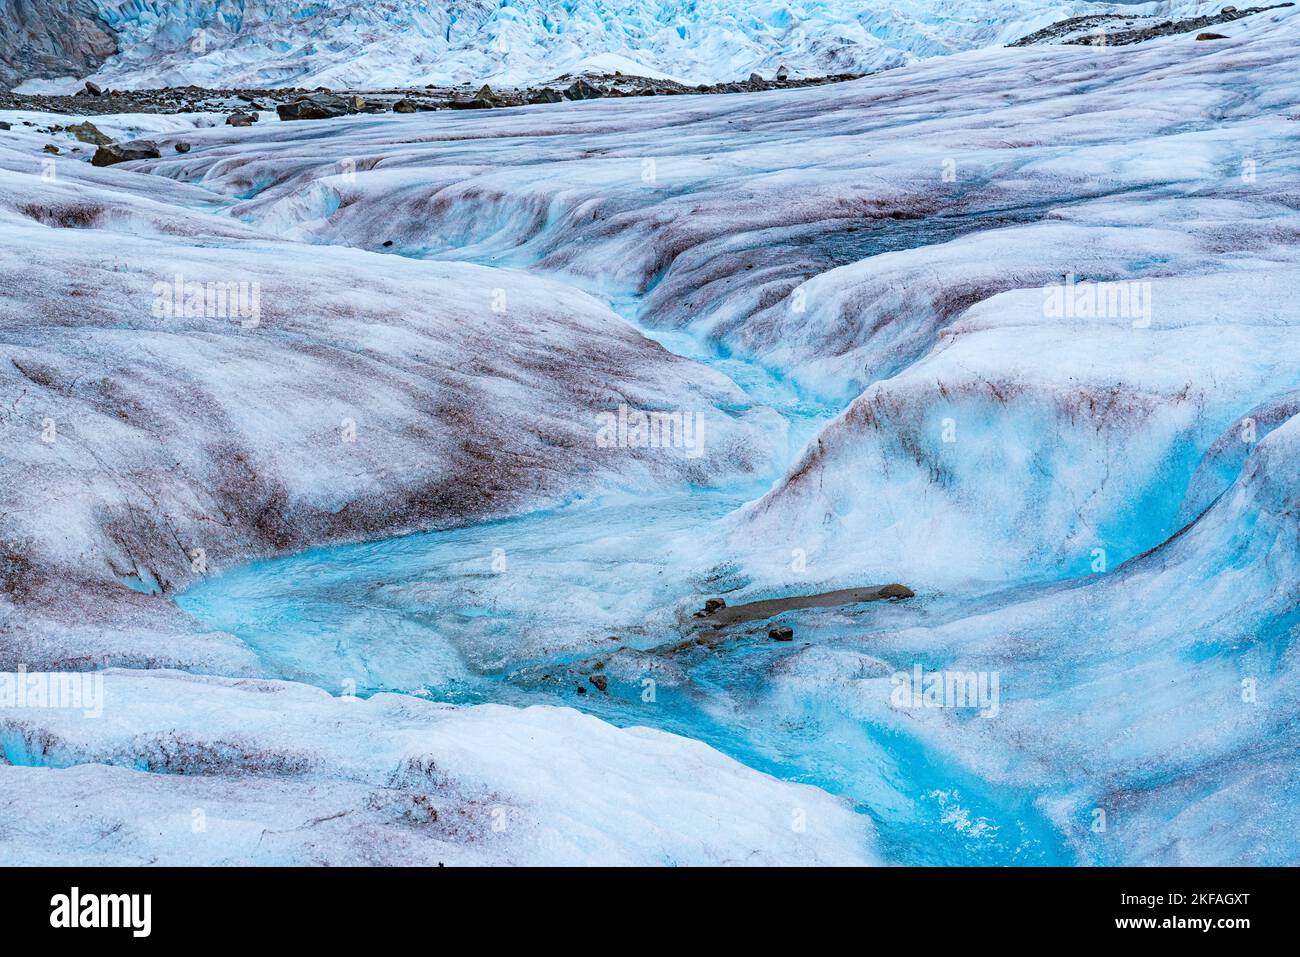 El hielo del glaciar que se derrite en el glaciar Mendenhall en Alaska forma una sinuosa corriente de agua azul cristalina Foto de stock